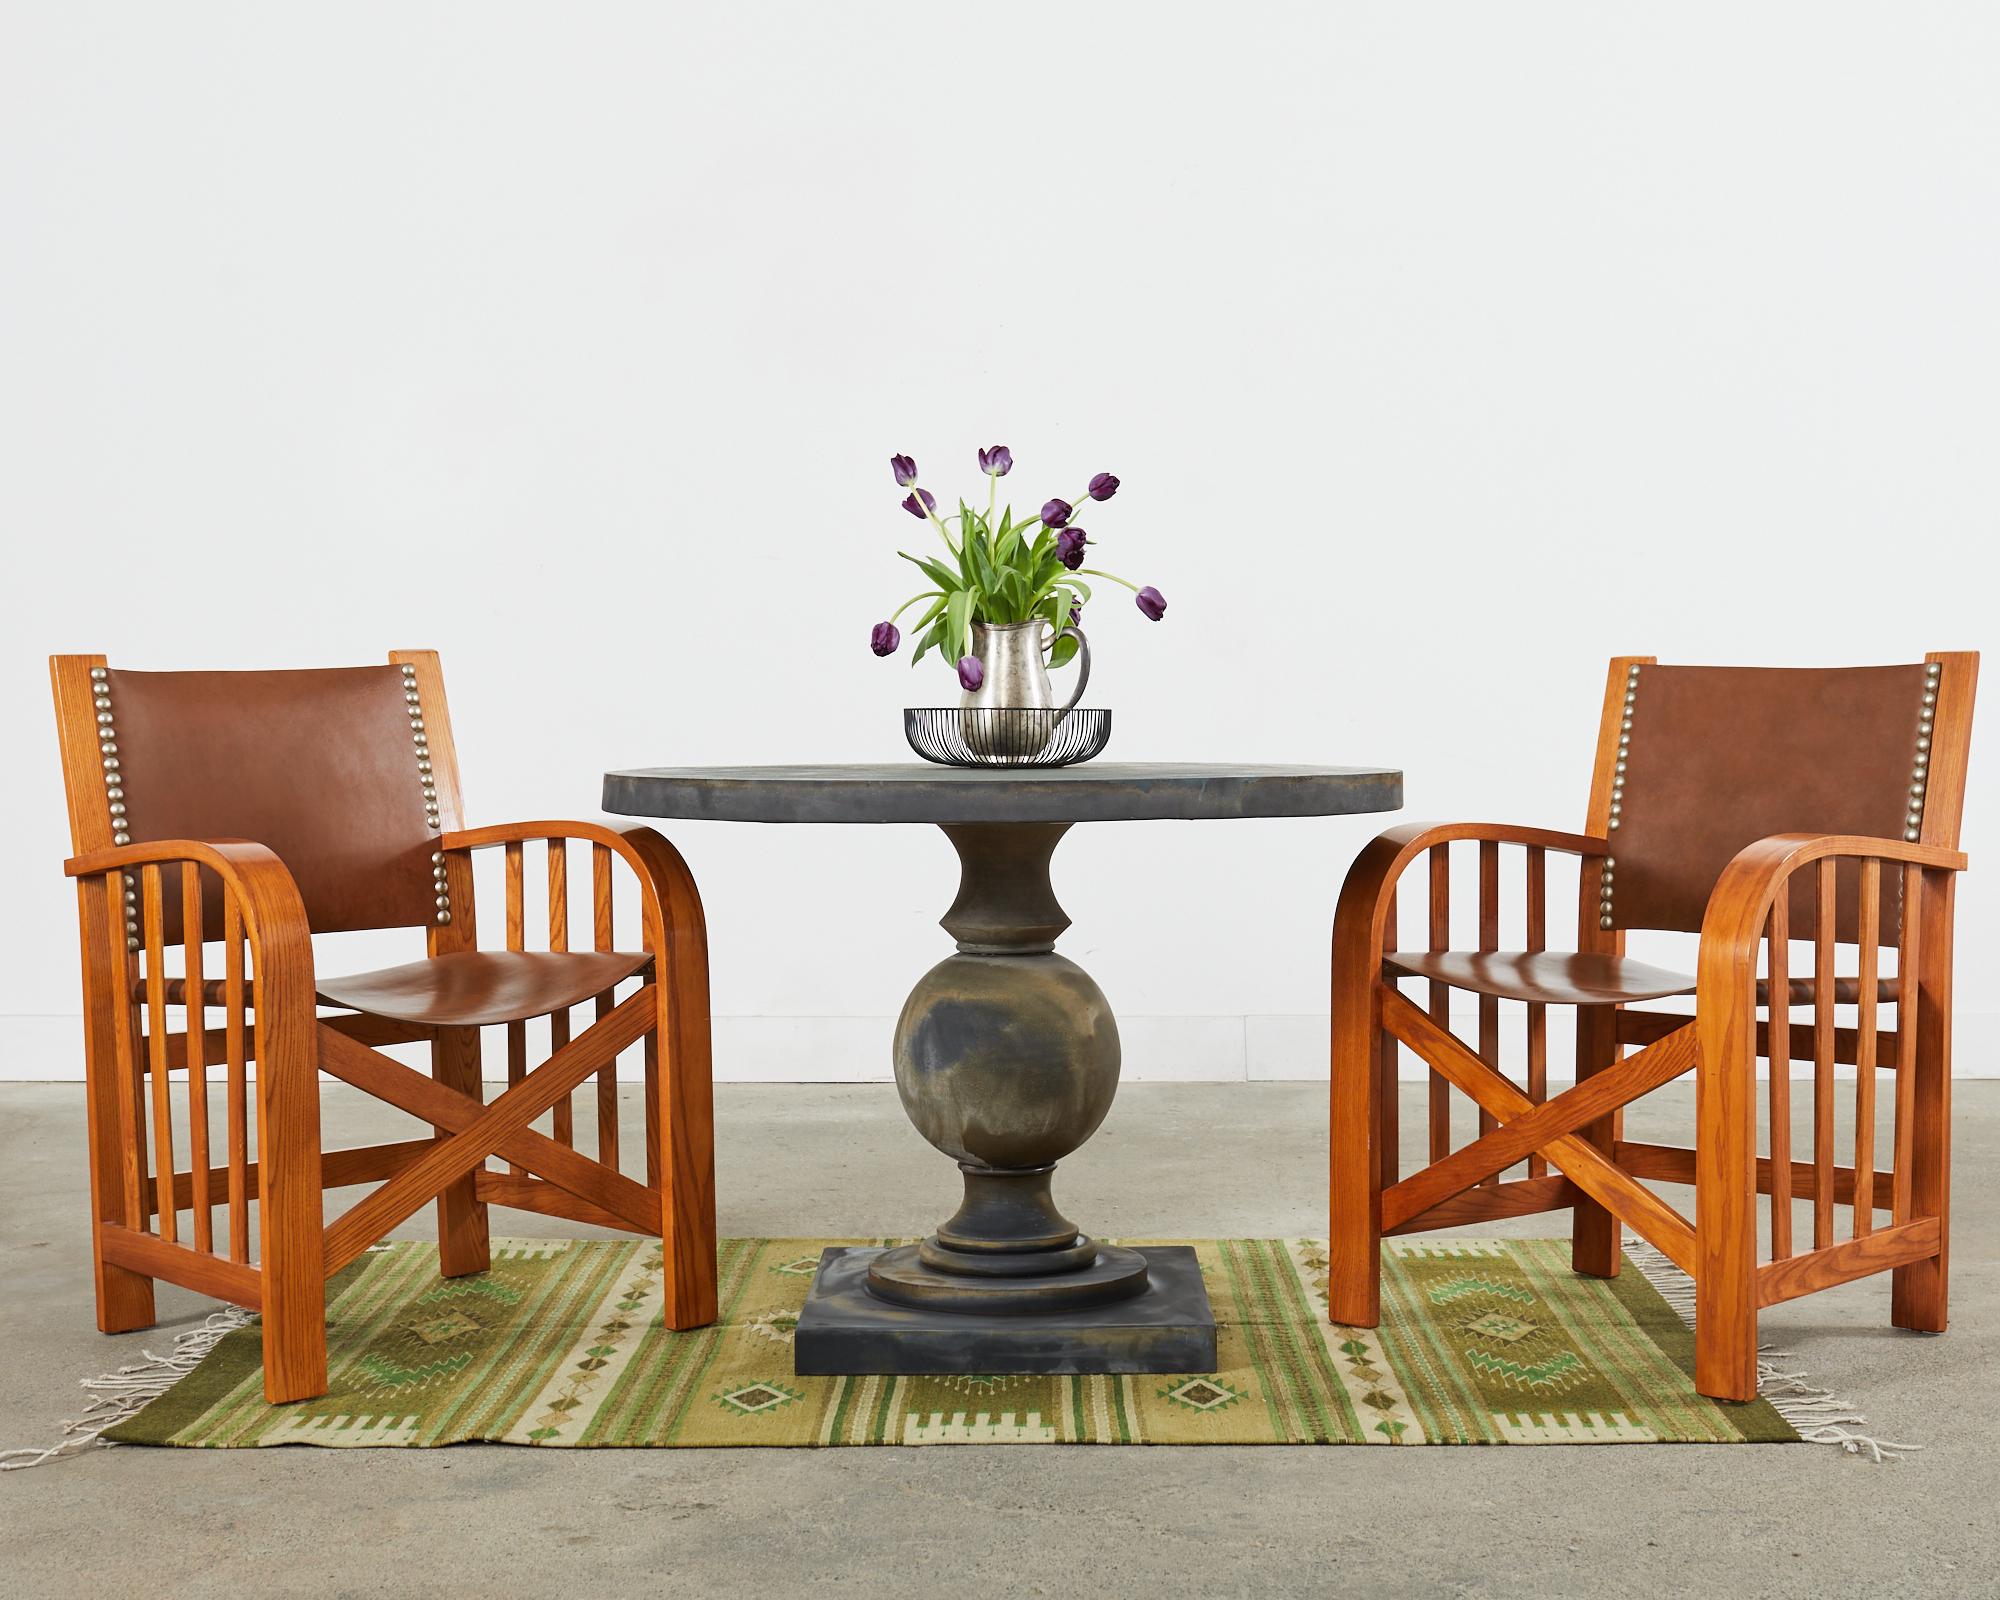 Ensemble sur mesure de quatre chaises ou fauteuils de salle à manger de style country américain, avec assise et dossier en cuir. Conçue par Ralph Lauren dans le cadre de la collection Shelter Sky, cette pièce est fabriquée à partir de frêne massif.